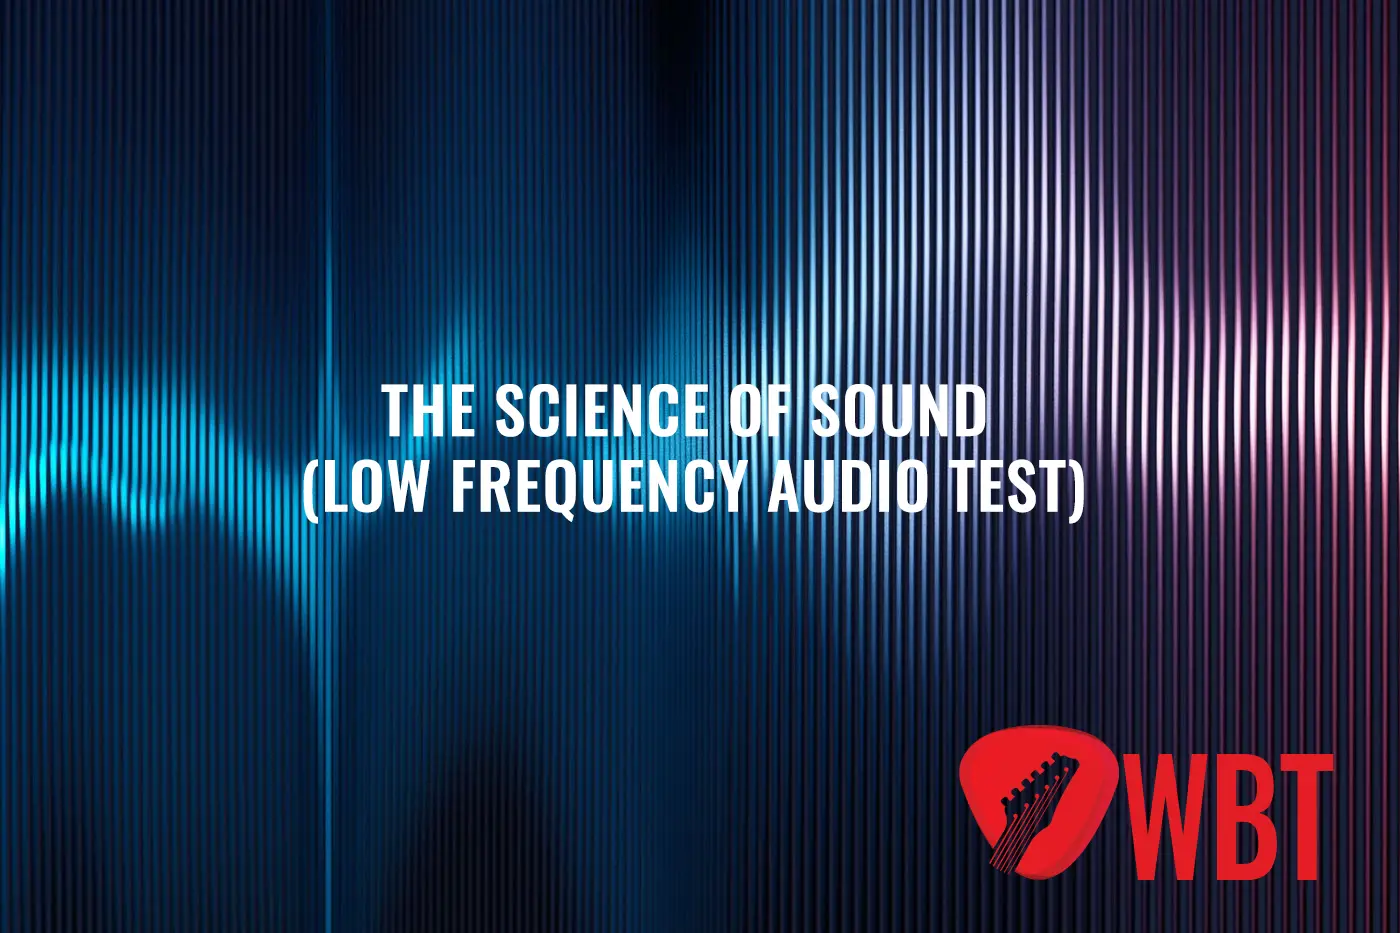 The Science Of Sound (Nízkofrekvenční audio test)